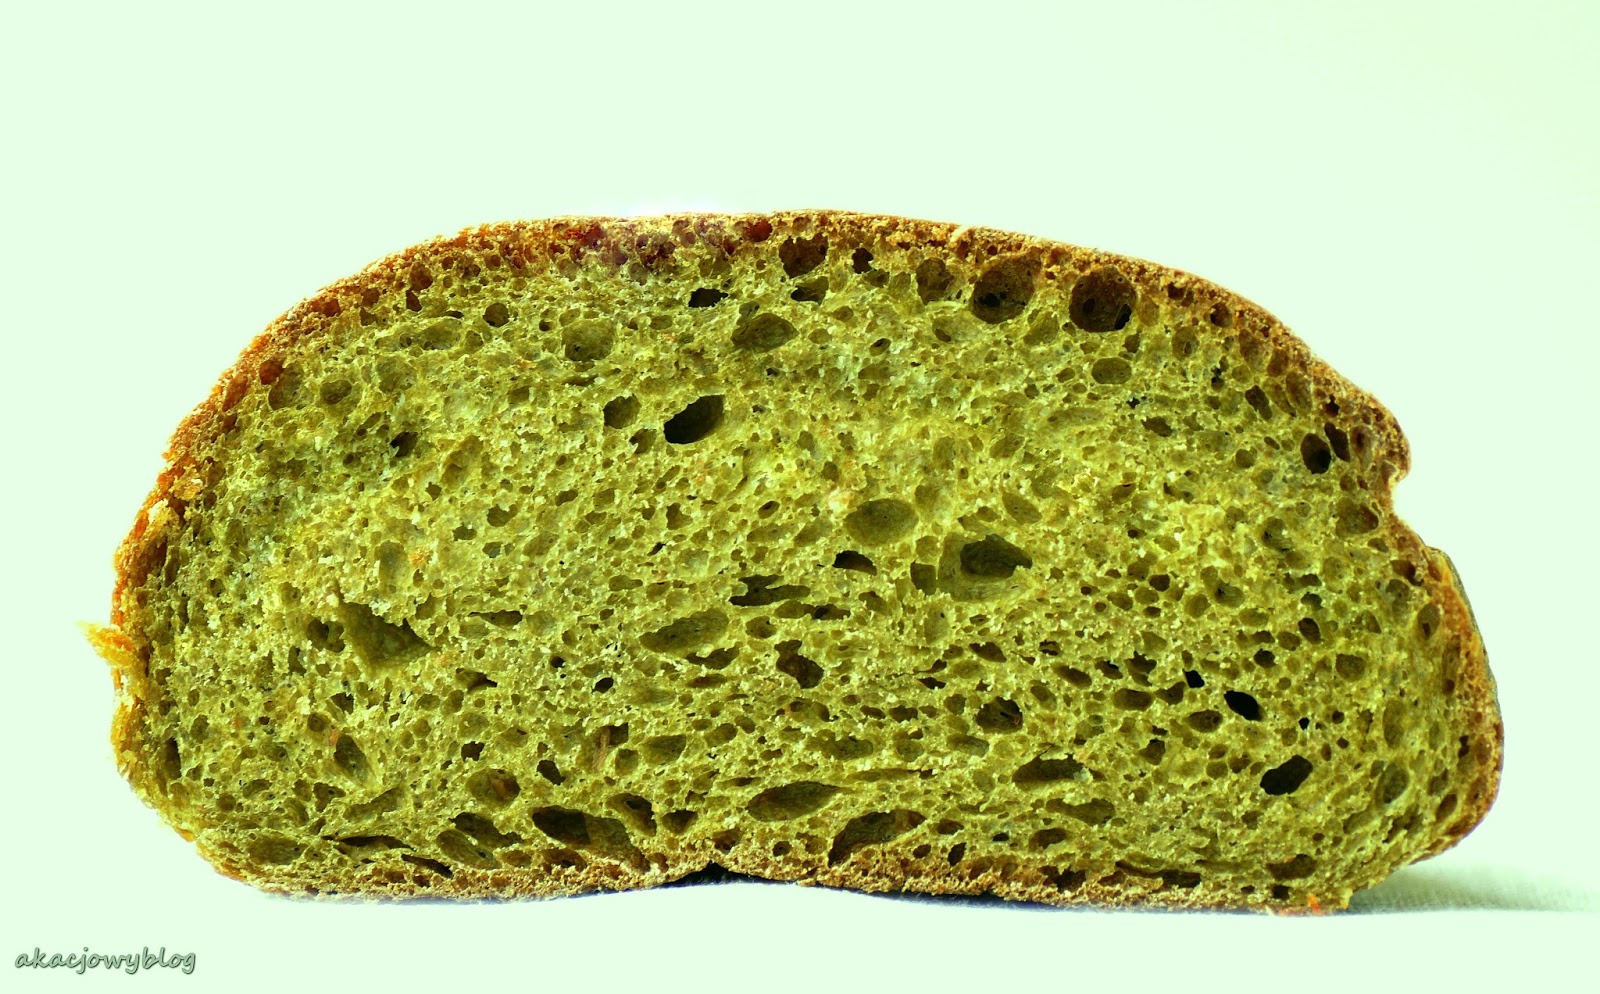 Chleb jęczmienny z owczym serem i kminkiem. 